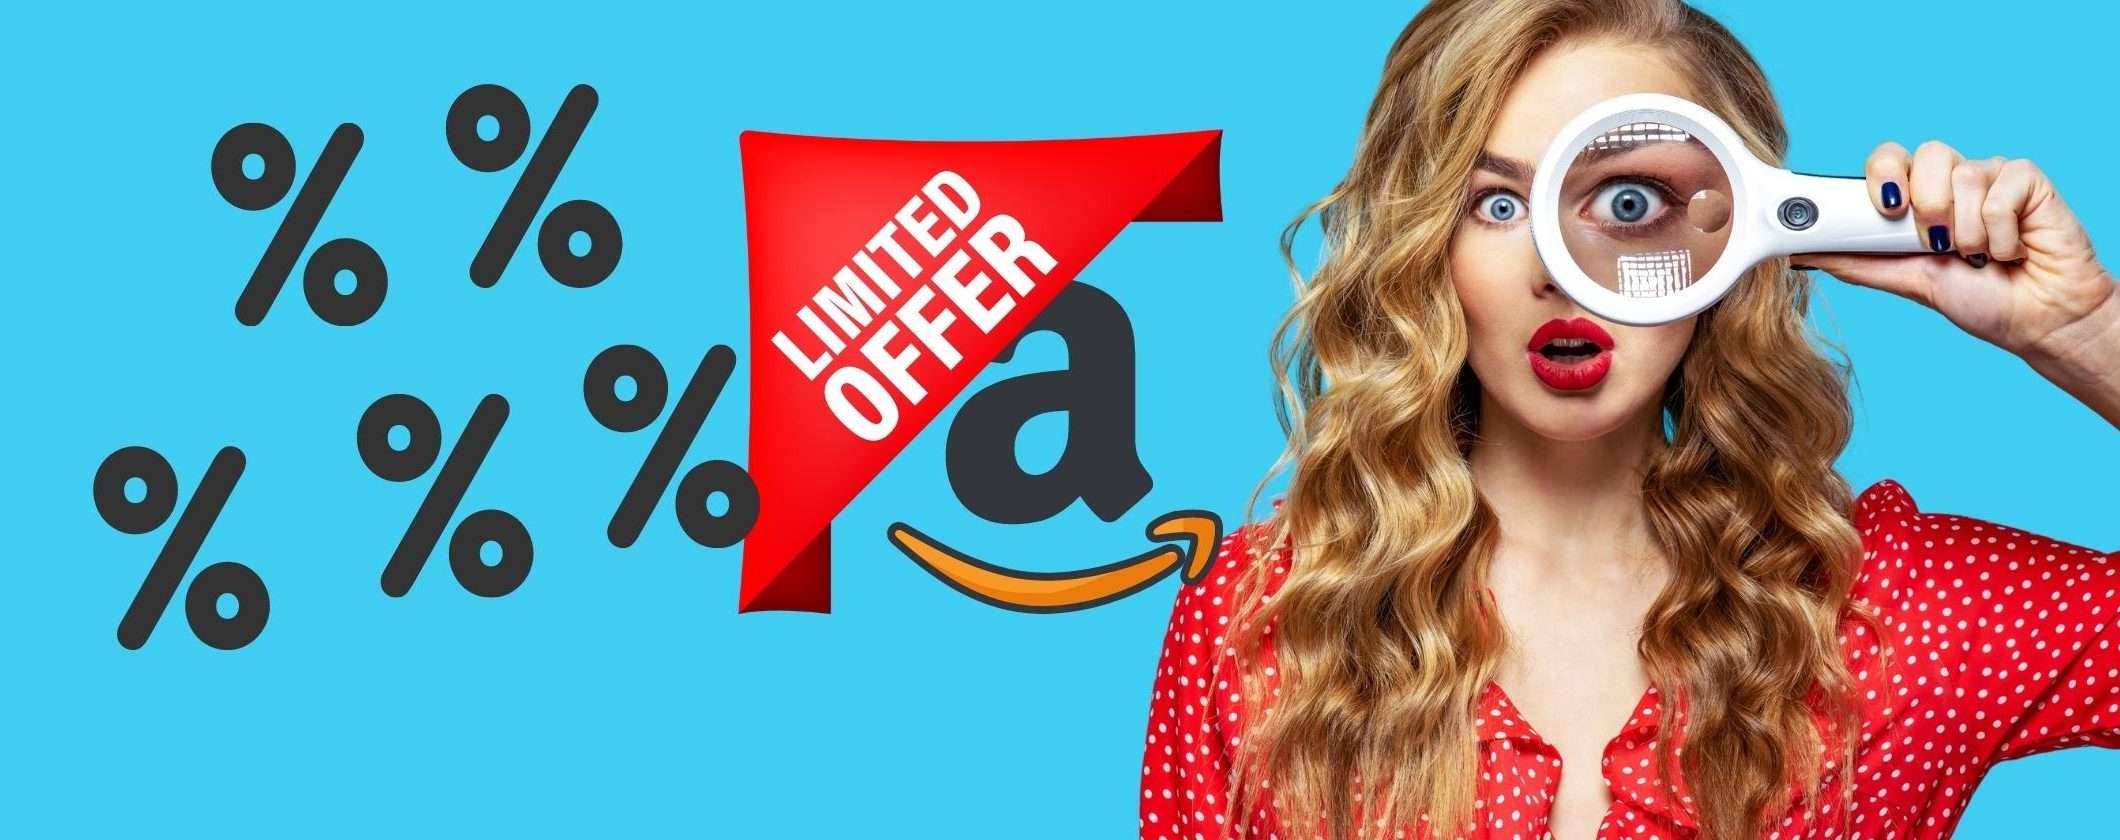 Amazon: i best buy di oggi da non lasciarsi scappare